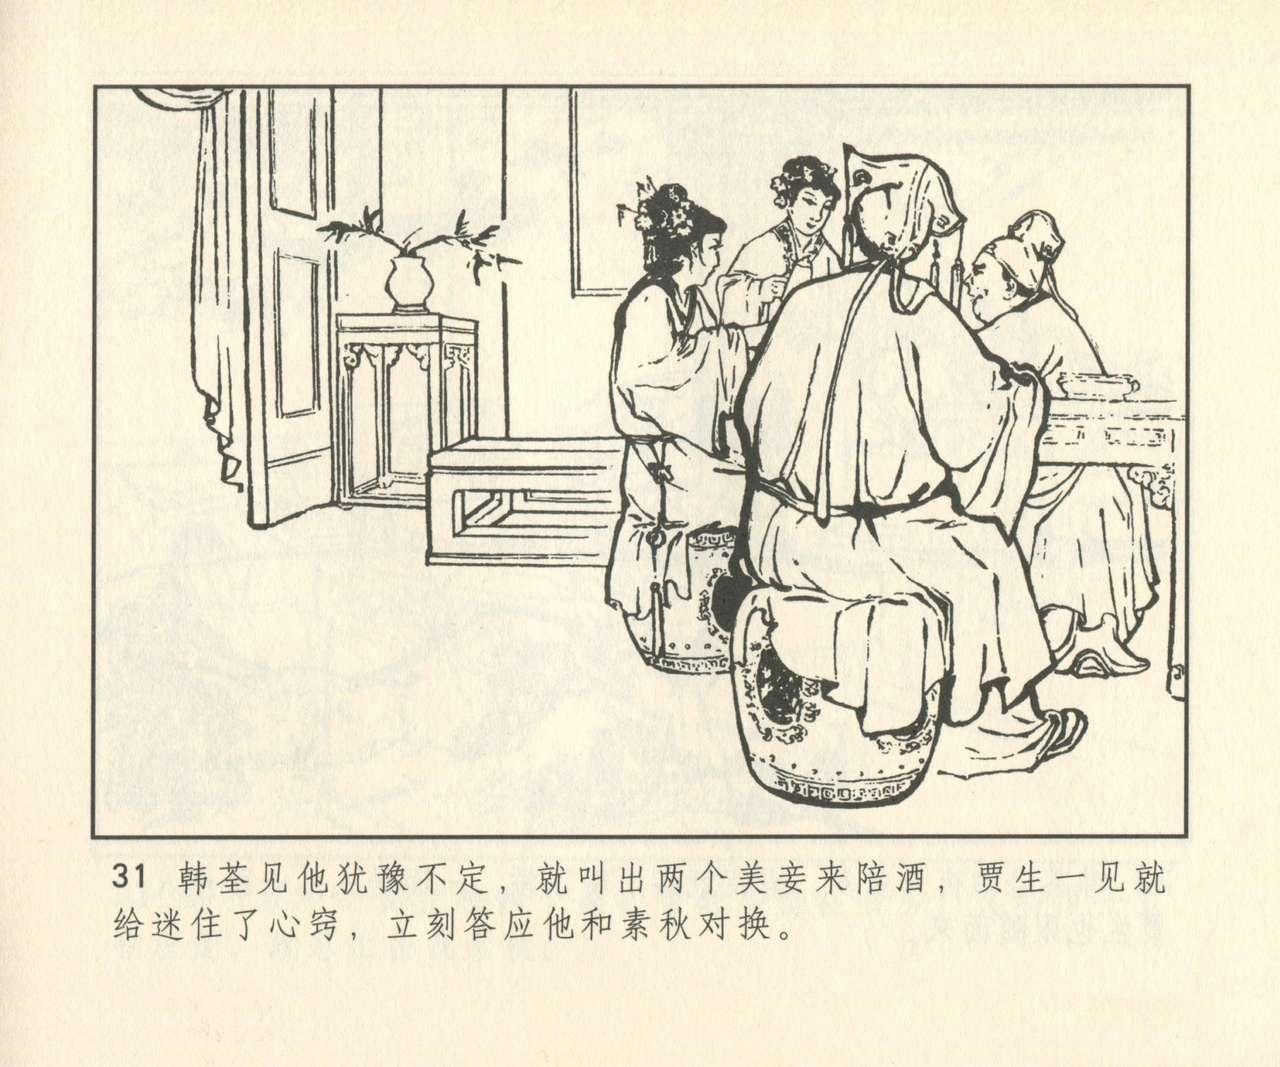 聊斋志异 张玮等绘 天津人民美术出版社 卷二十一 ~ 三十 311